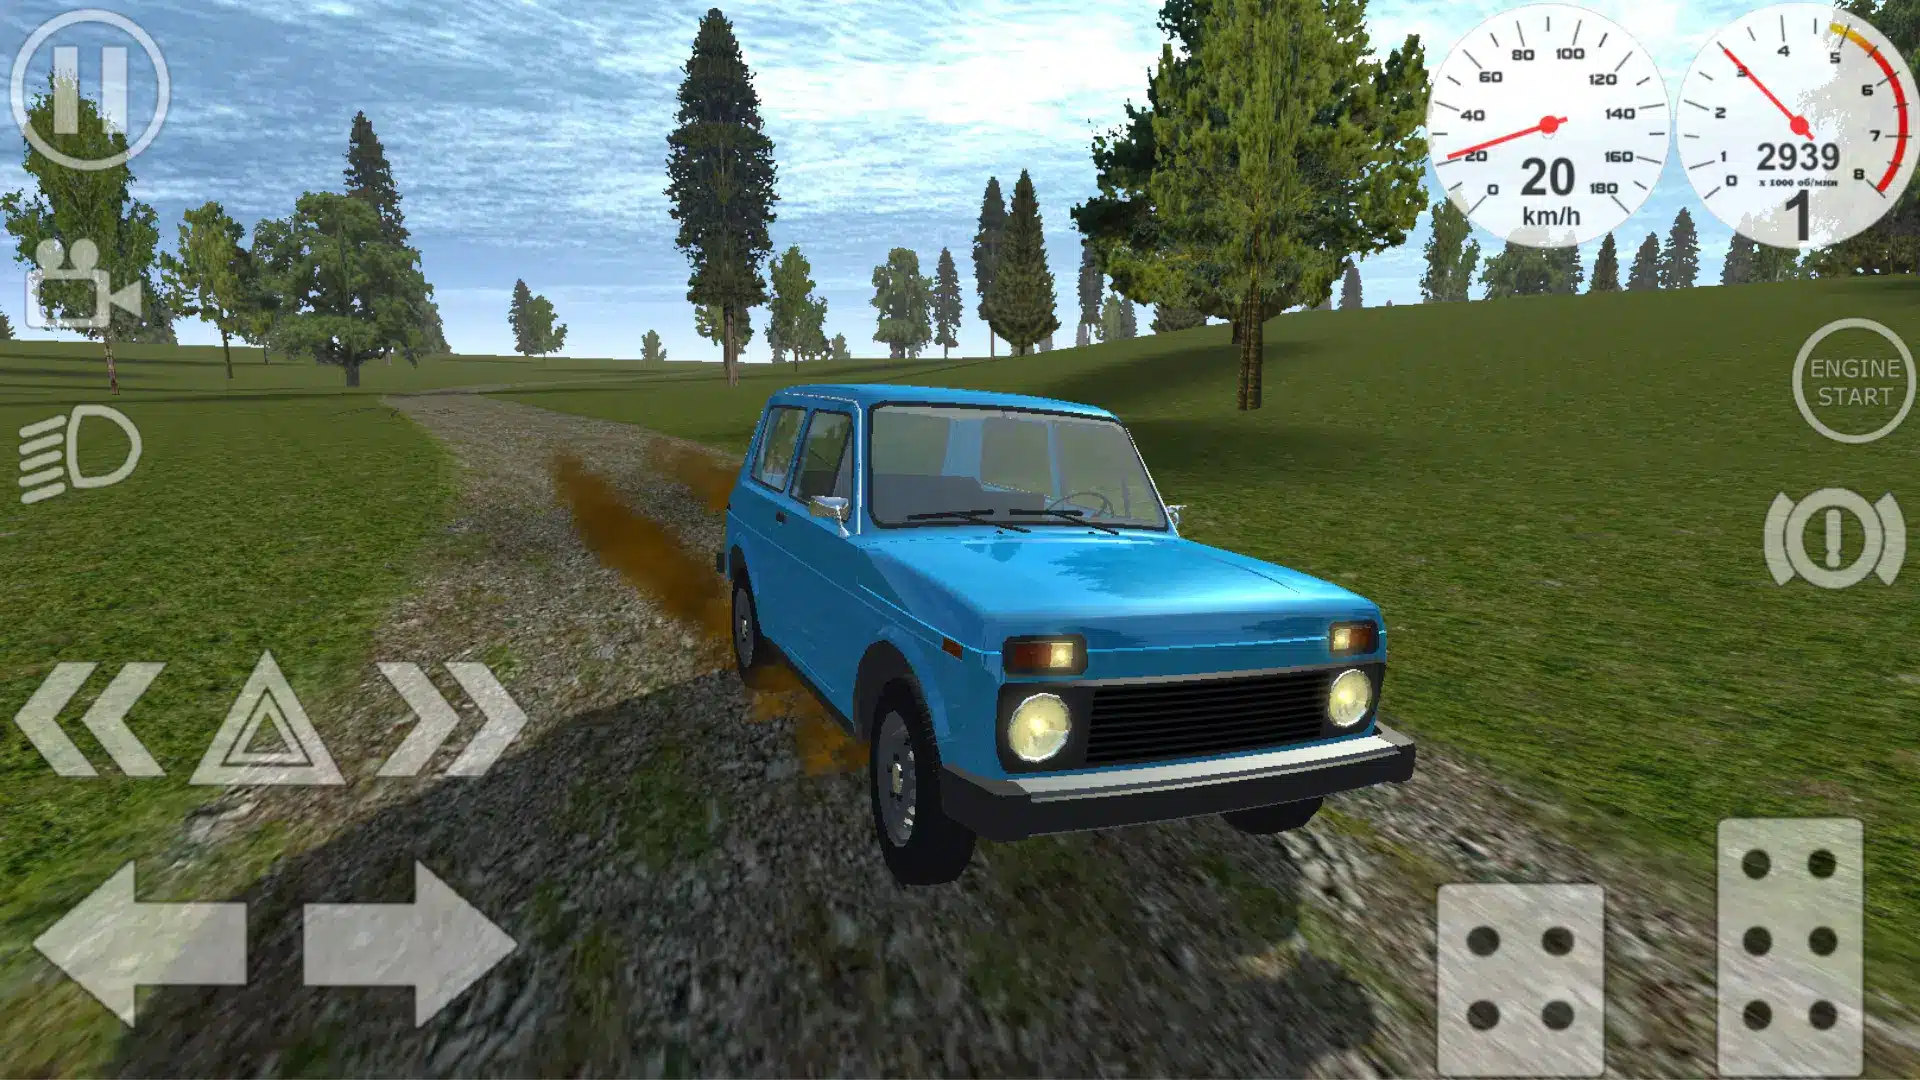 Simple Car Crash Physics Sim Image 5